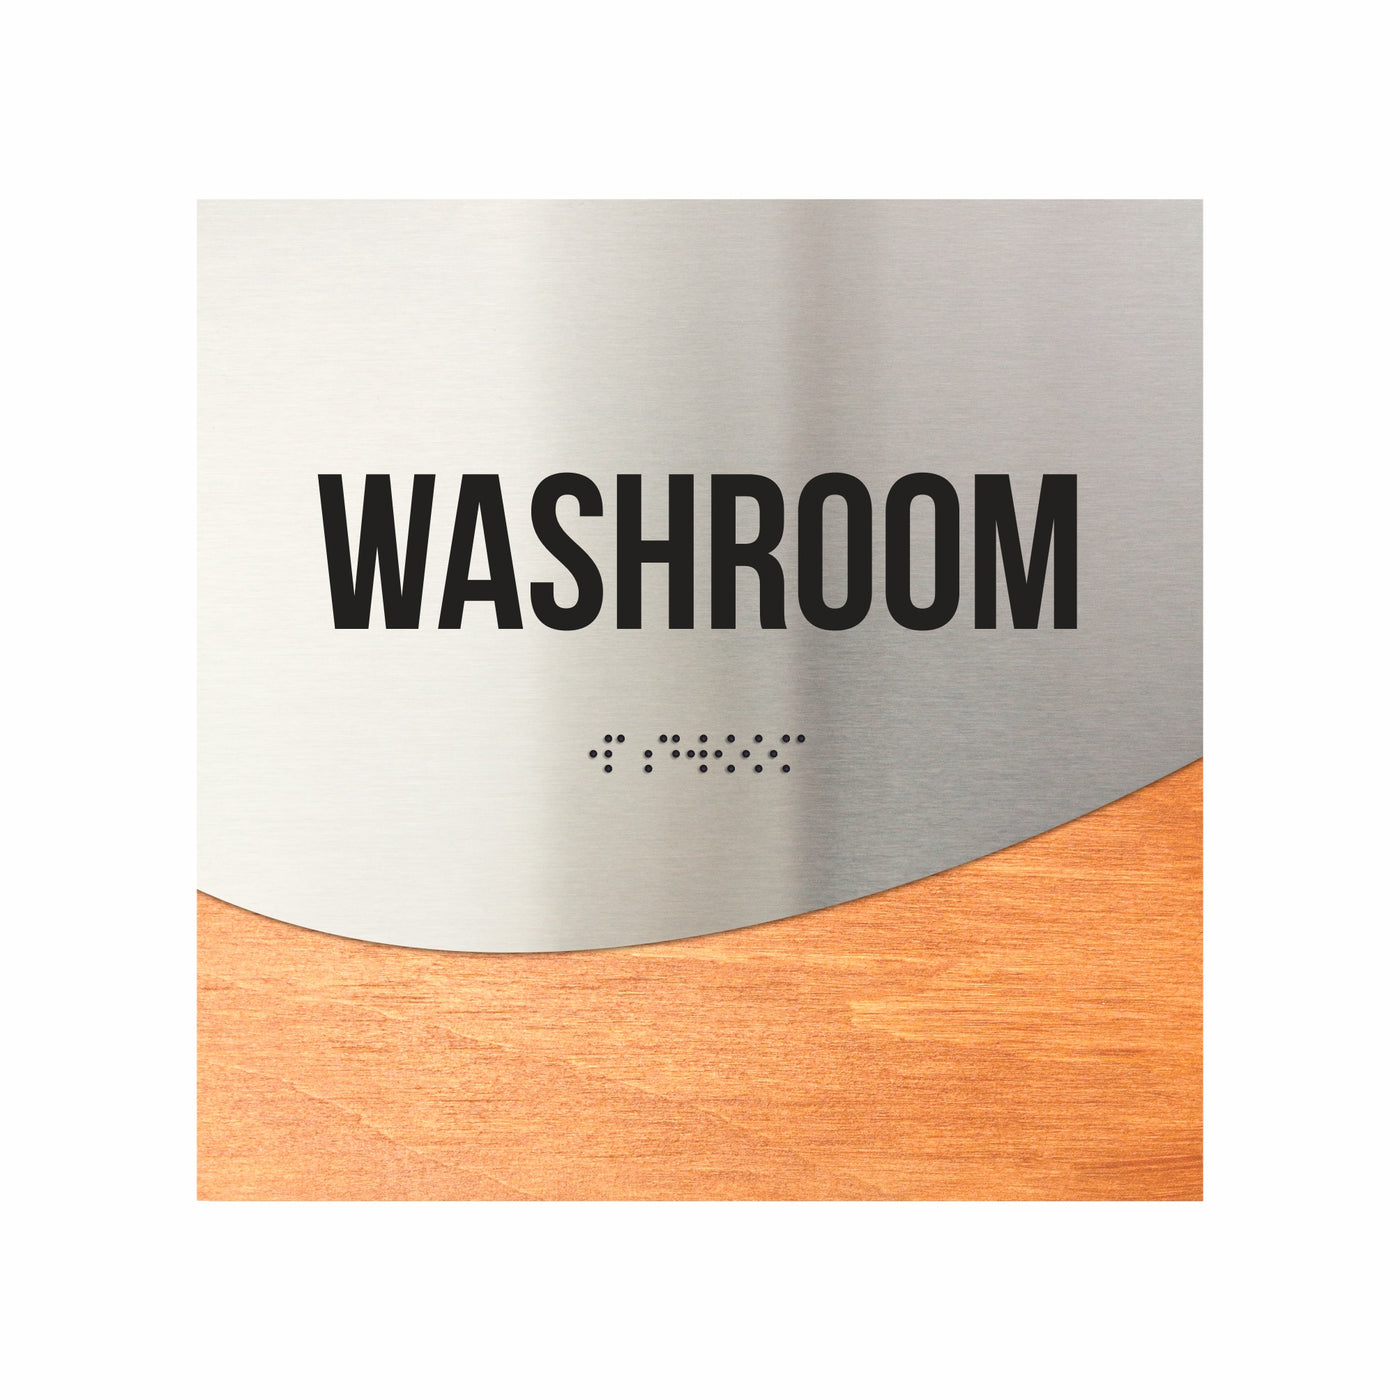 Washroom Door Sign - Stainless Steel & Wood Door Plate "Jure" Design